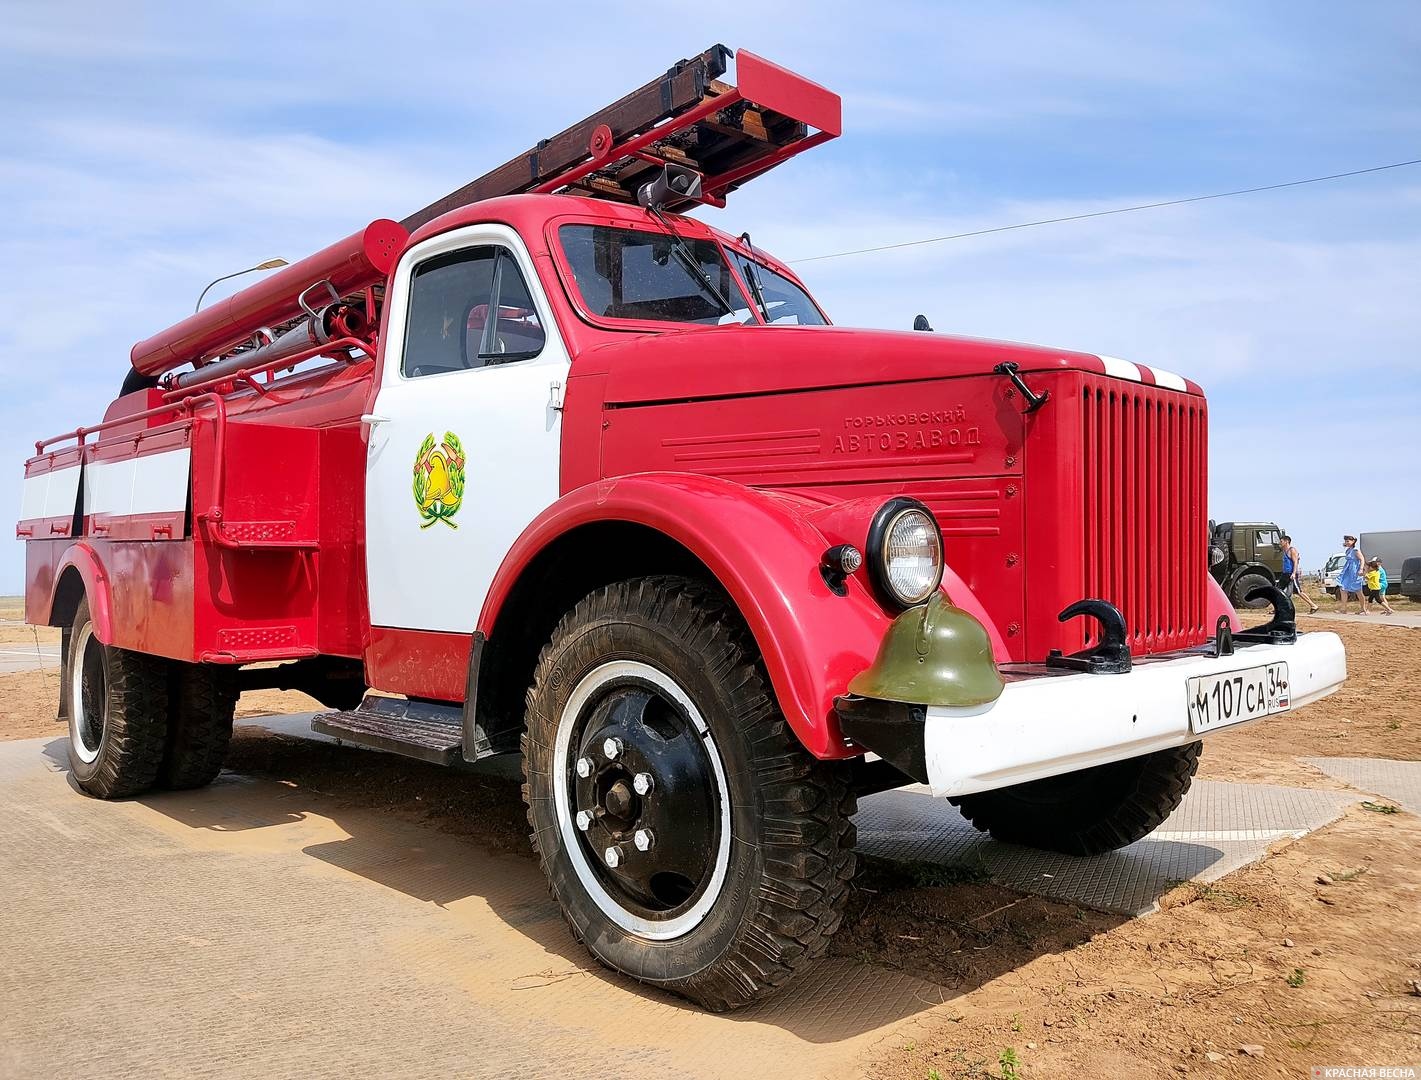 Пожарная машина на базе автомобиля ГАЗ. Форум «Армия-2022» 